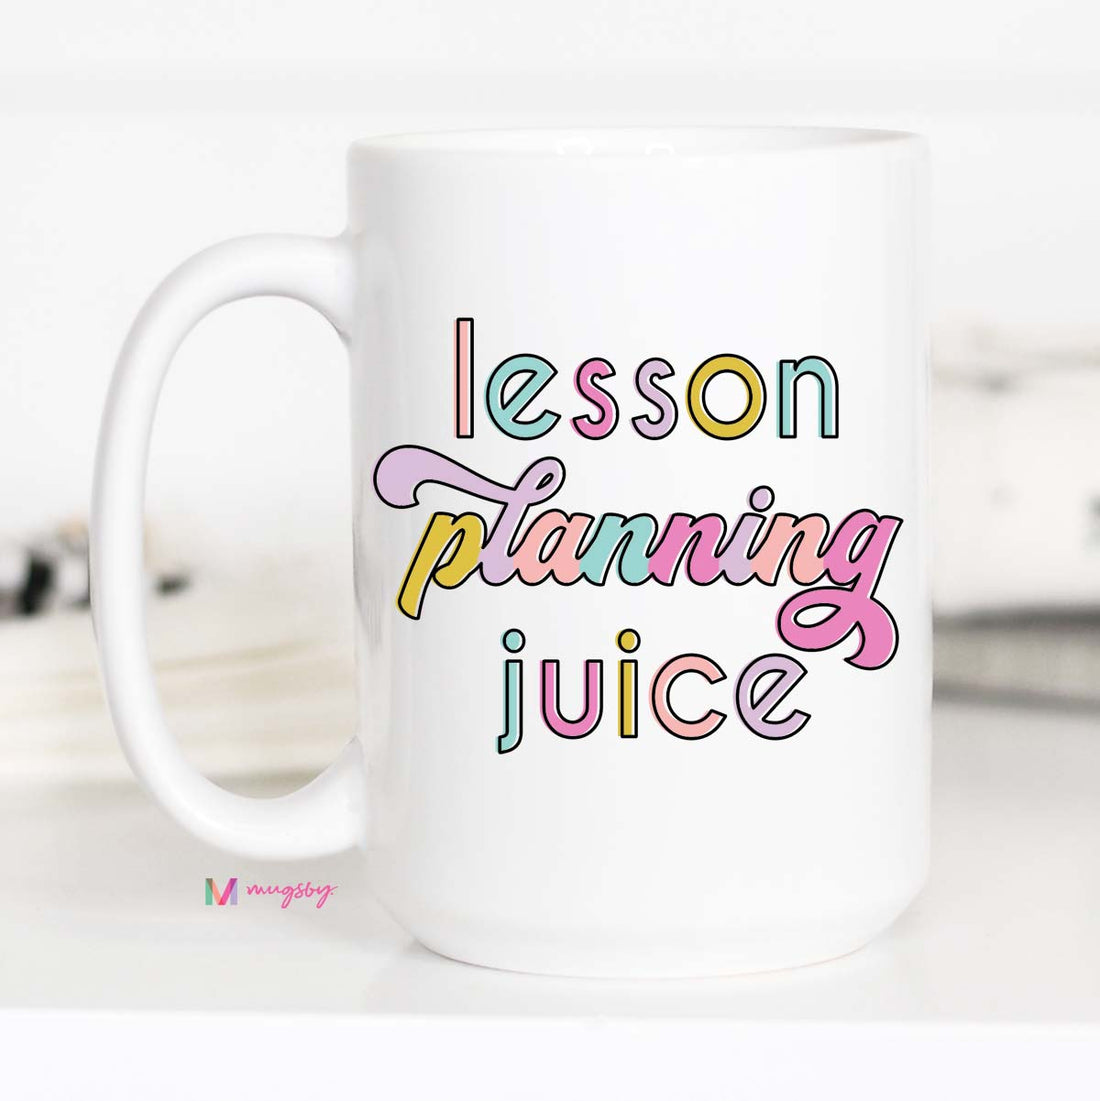 Lesson Planning Juice Teacher Coffee Mug